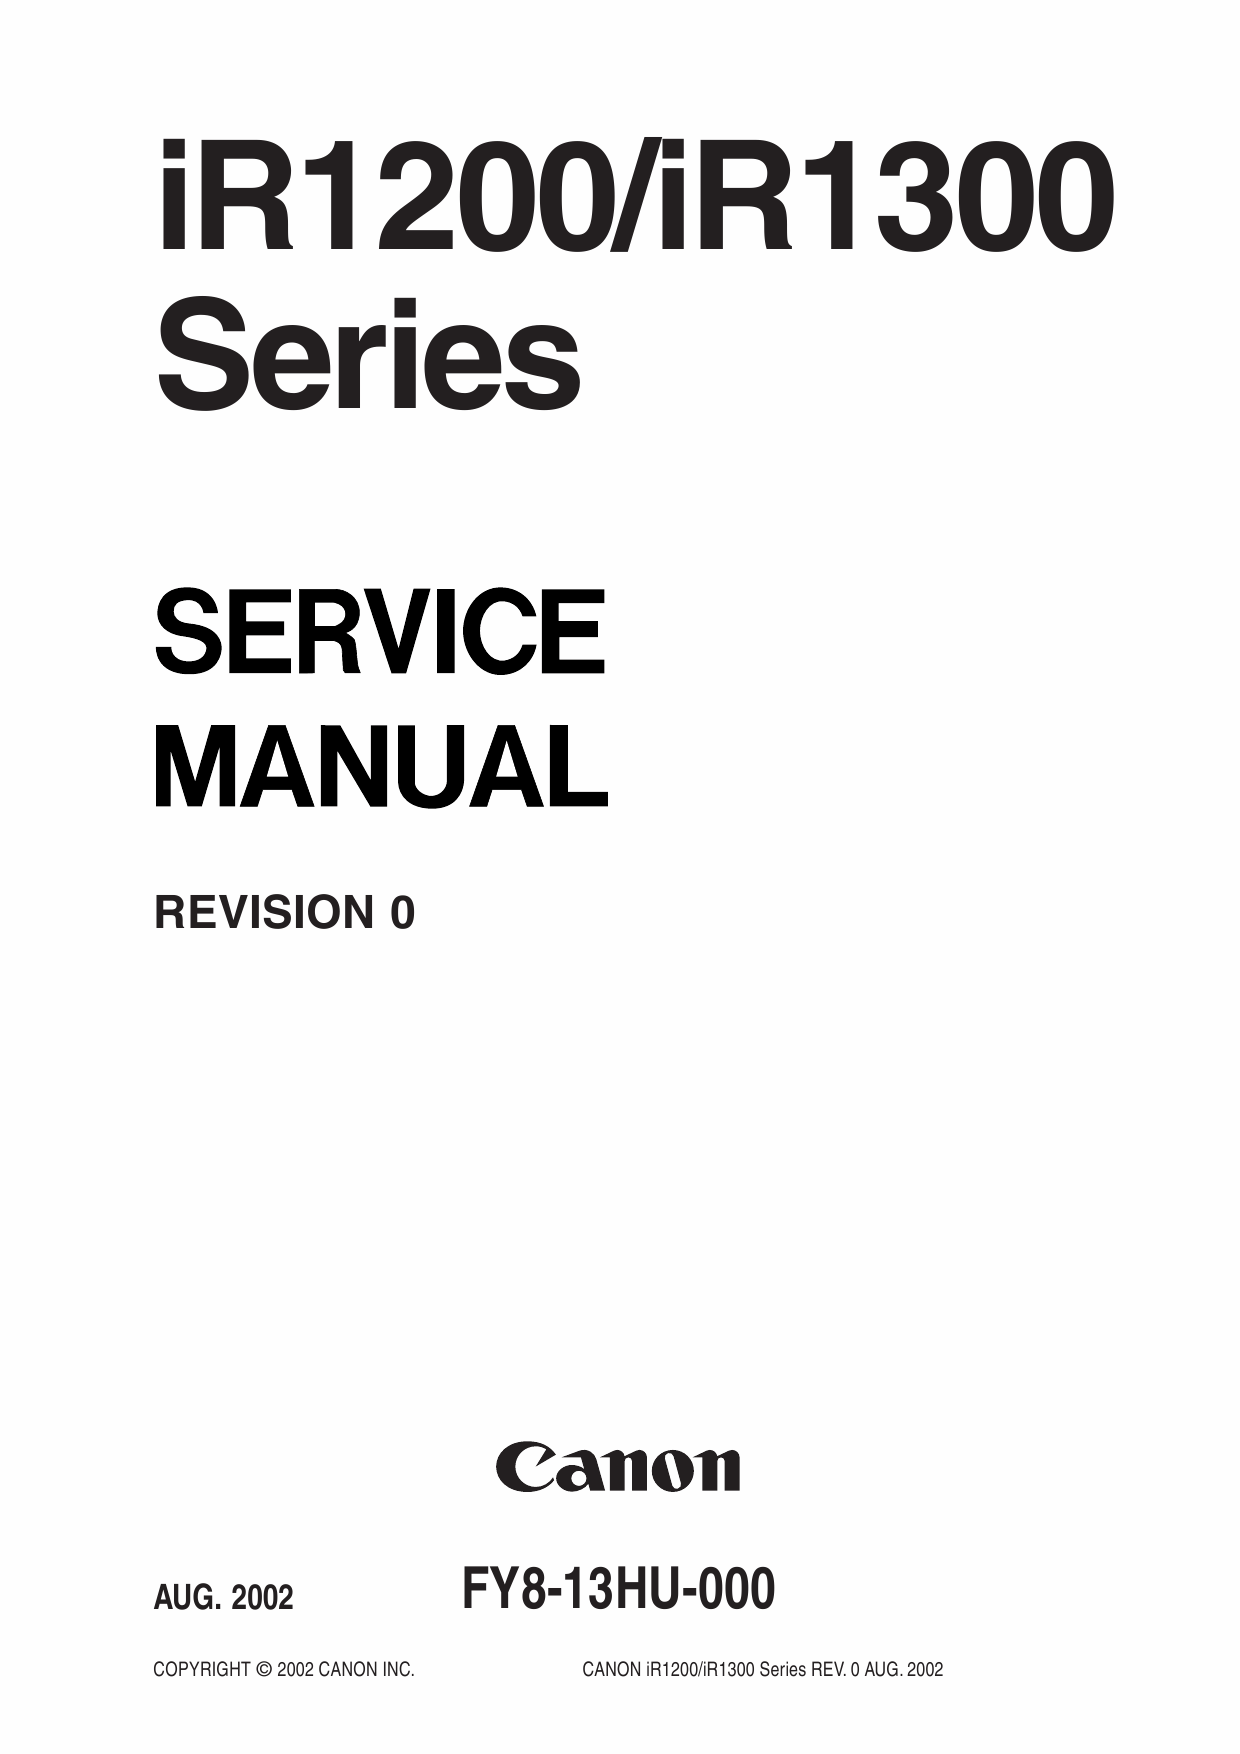 Canon imageRUNNER-iR 1200 1300 Service Manual-1